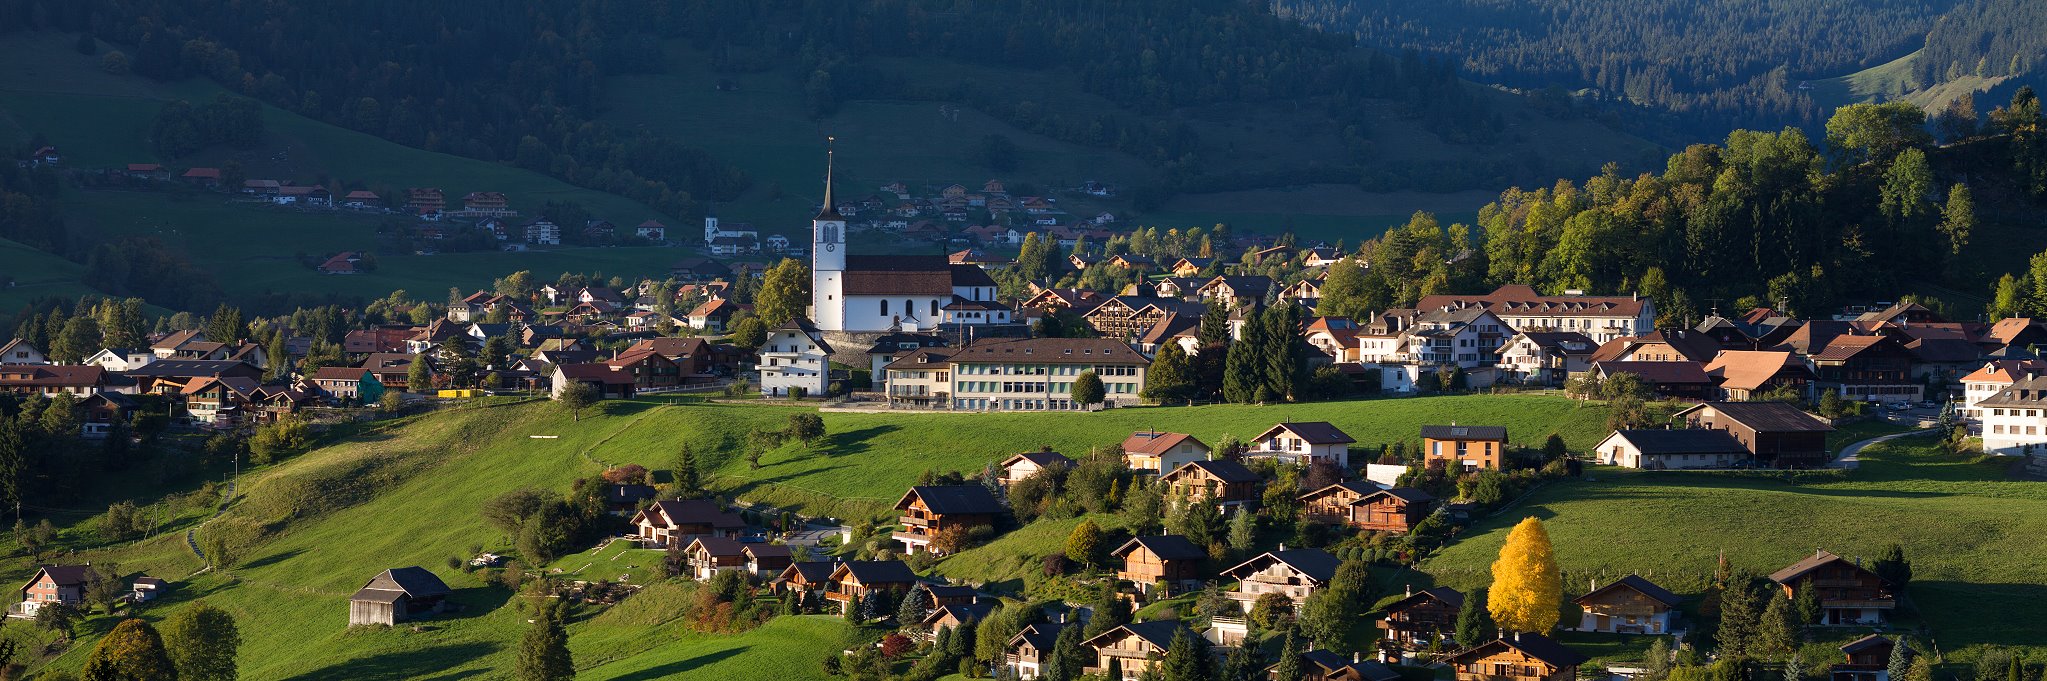 Le village de Charmey dans les Préalpes suisses.